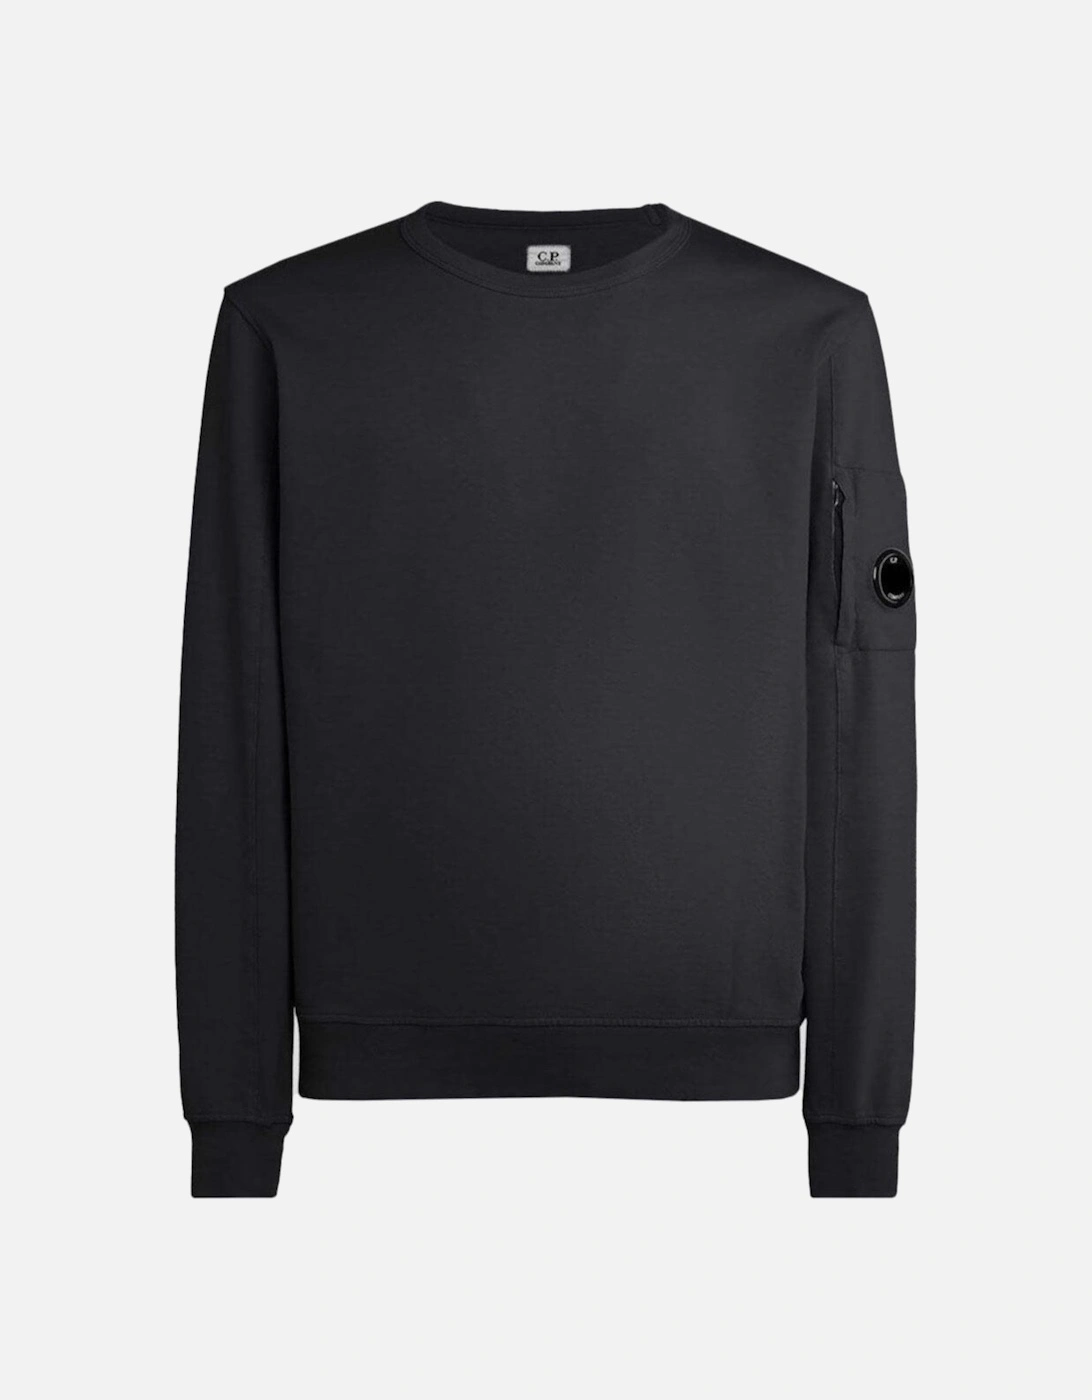 C.P Company Light Fleece Sweatshirt in Black, 2 of 1